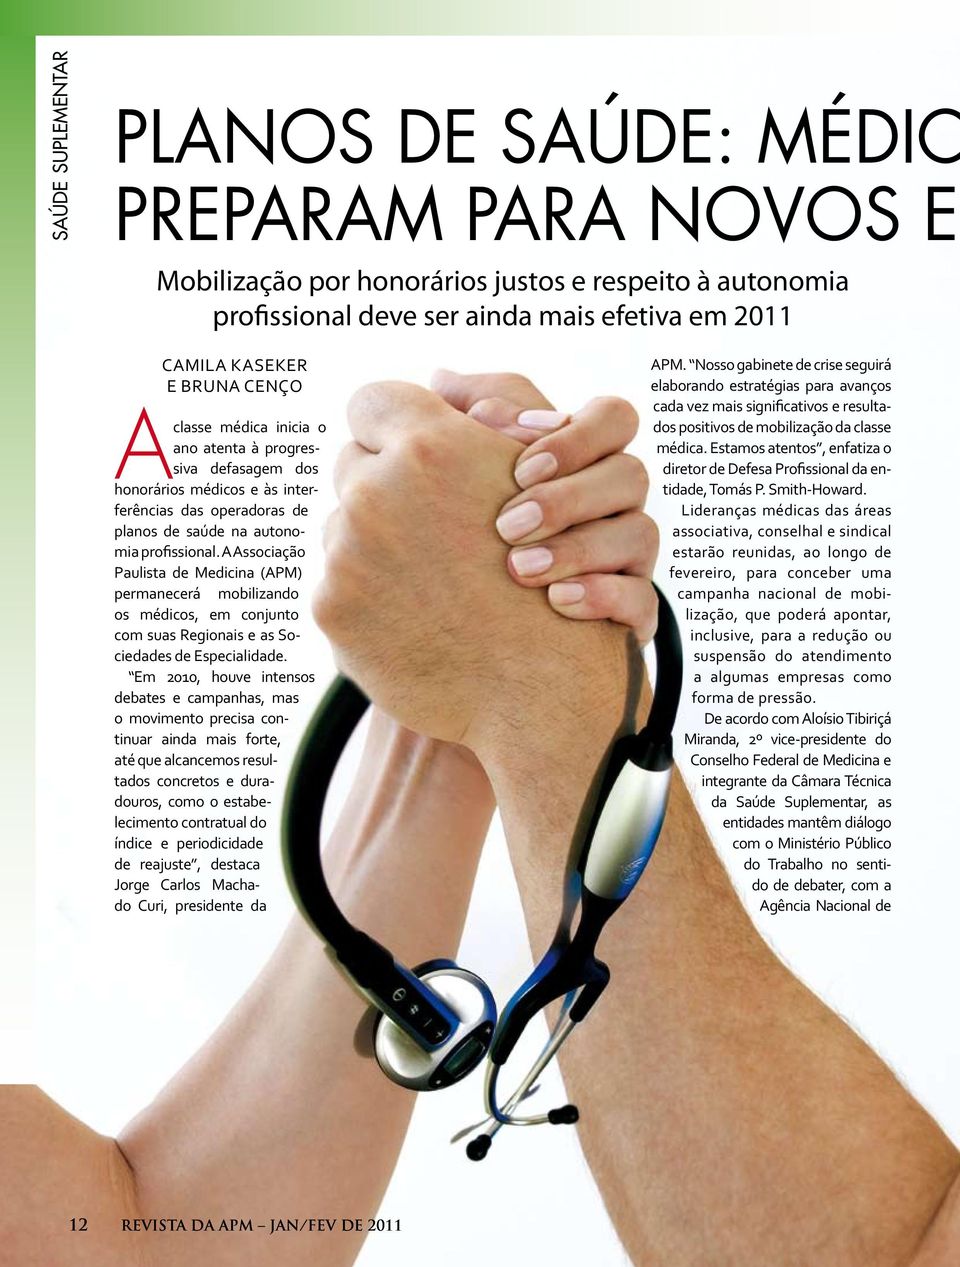 A Associação Paulista de Medicina (APM) permanecerá mobilizando os médicos, em conjunto com suas Regionais e as Sociedades de Especialidade.